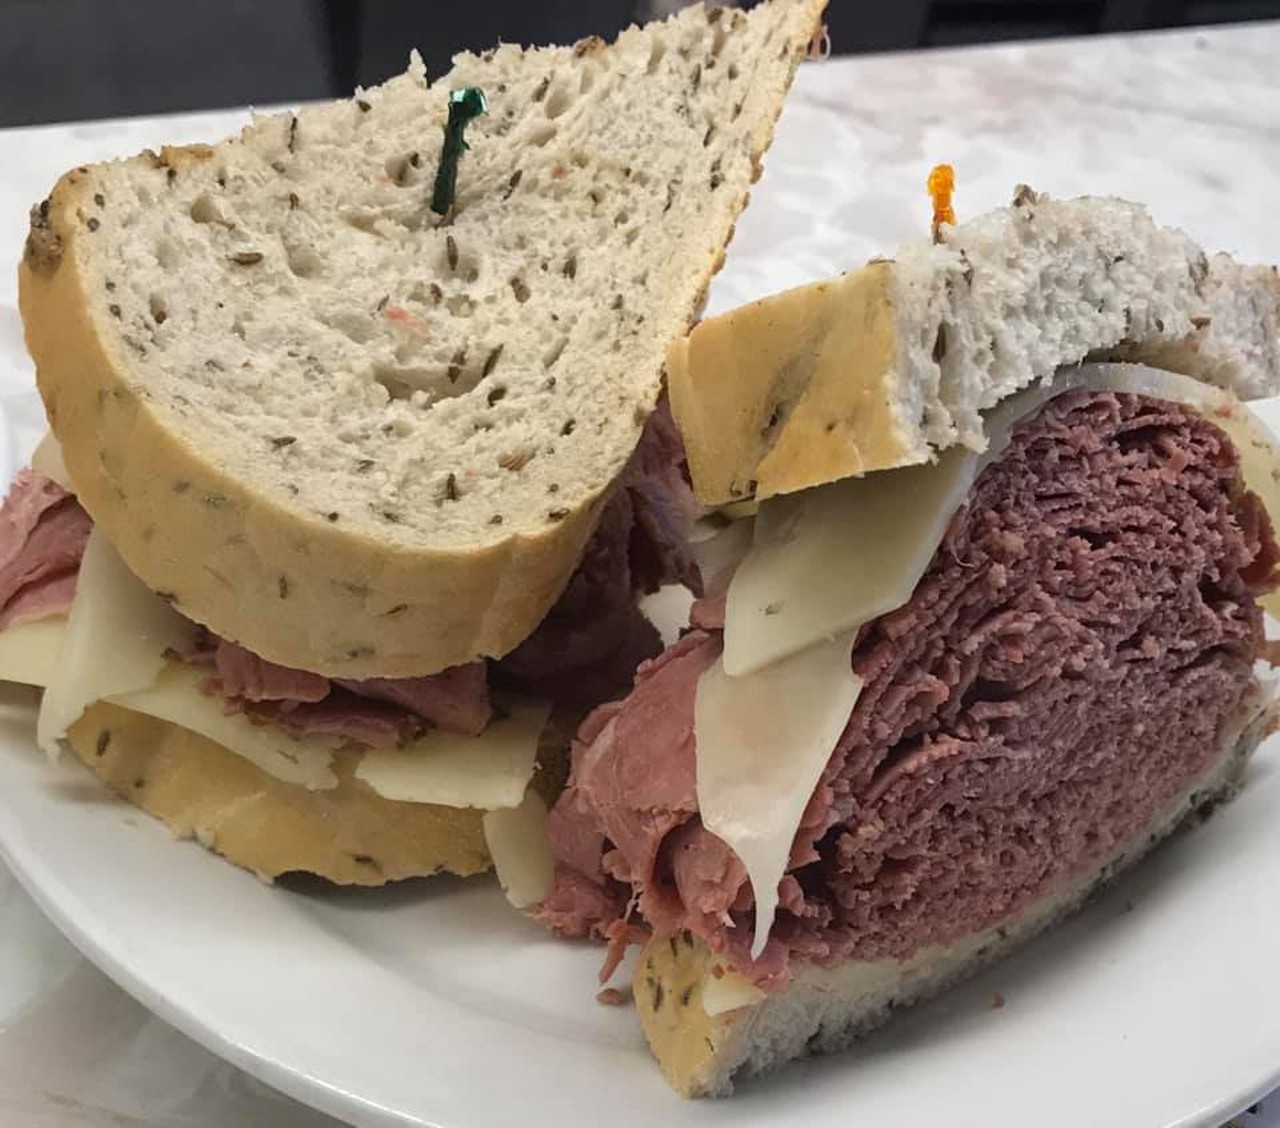 Deli sandwiches, Metroparks, 2 degrees of separation.
Via Drthomk/Reddit